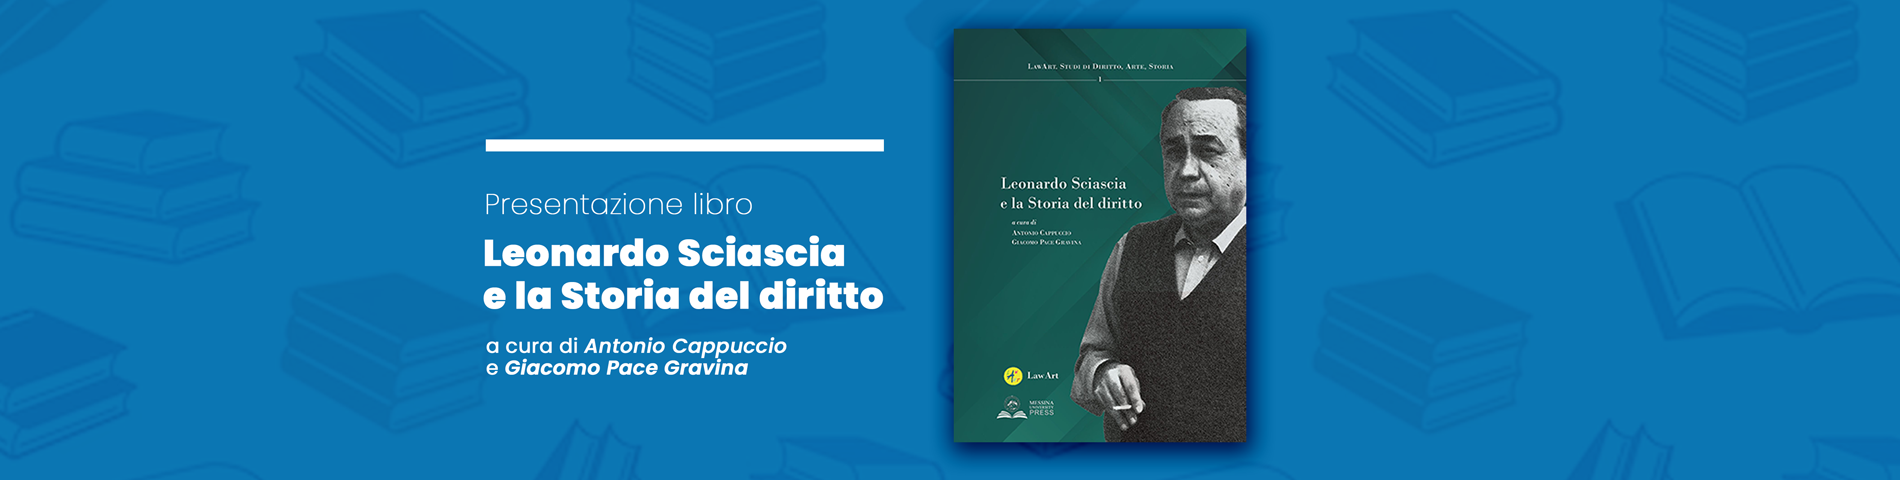 Presentazione del volume “Leonardo Sciascia e la Storia del diritto”